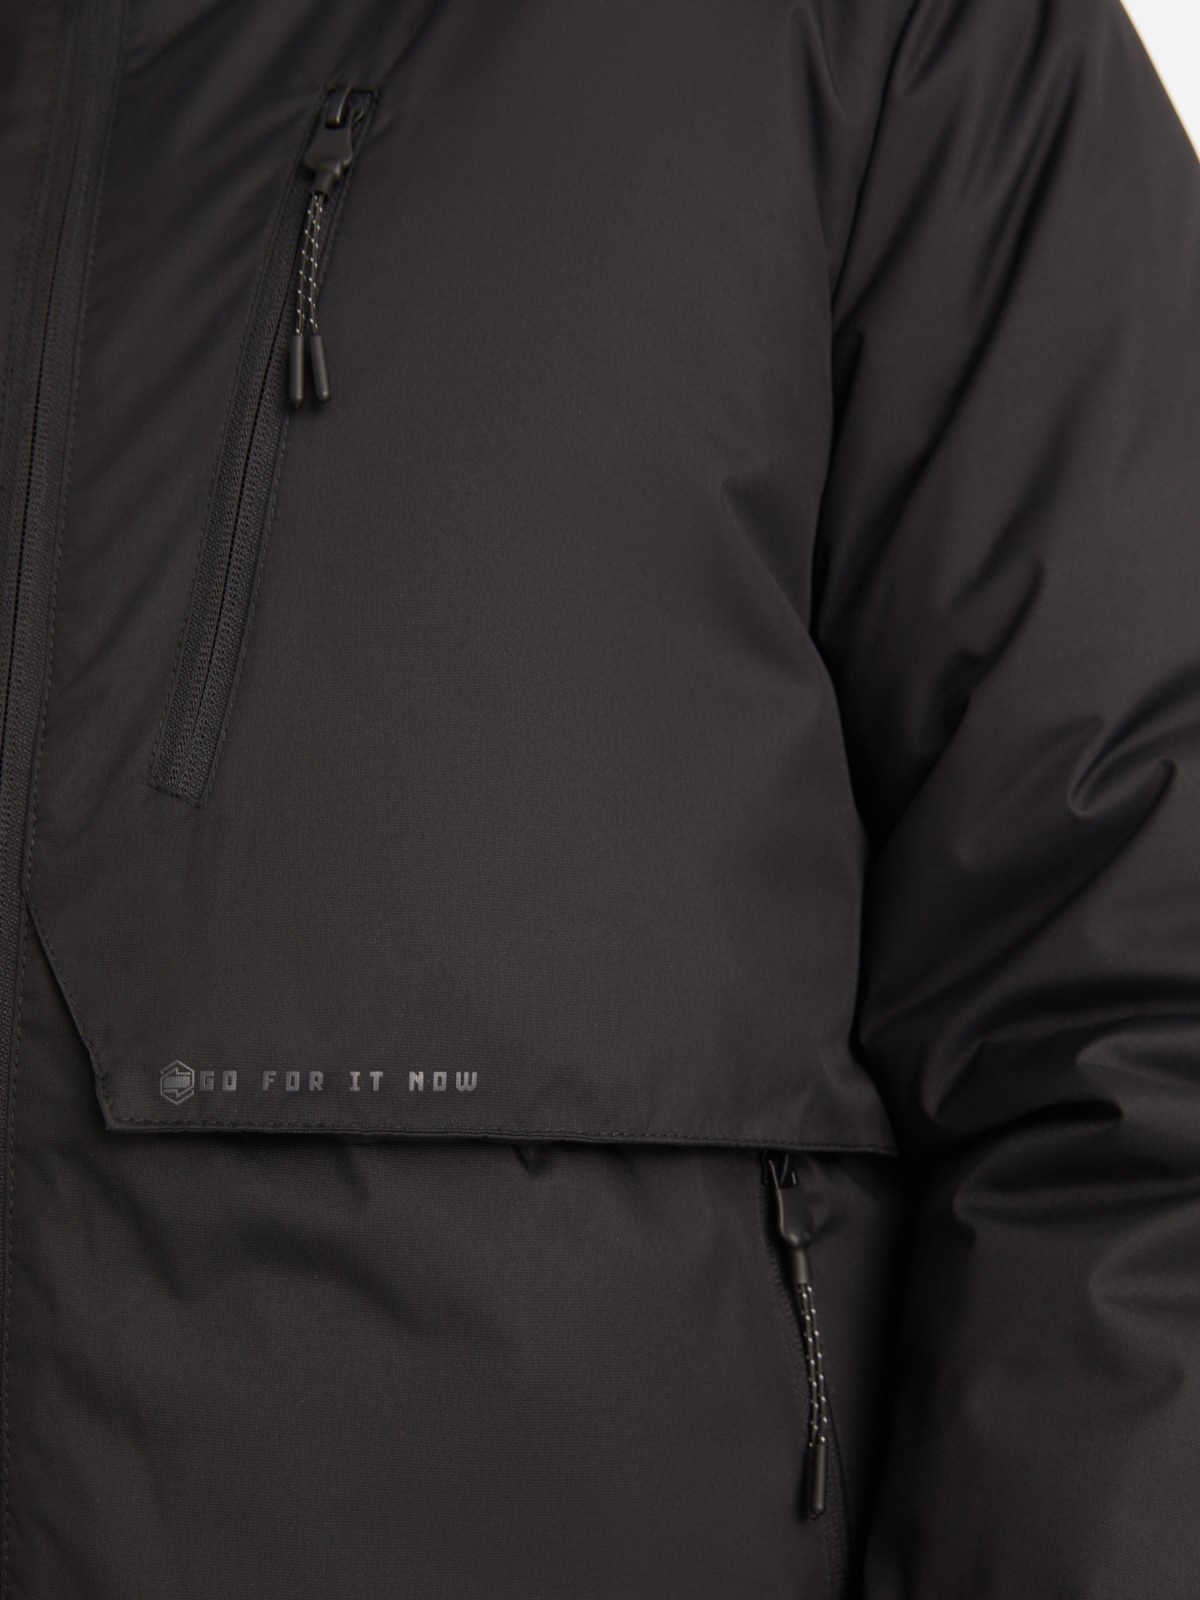 Тёплая куртка с капюшоном на синтепоне zolla 01412510L124, цвет черный, размер M - фото 5